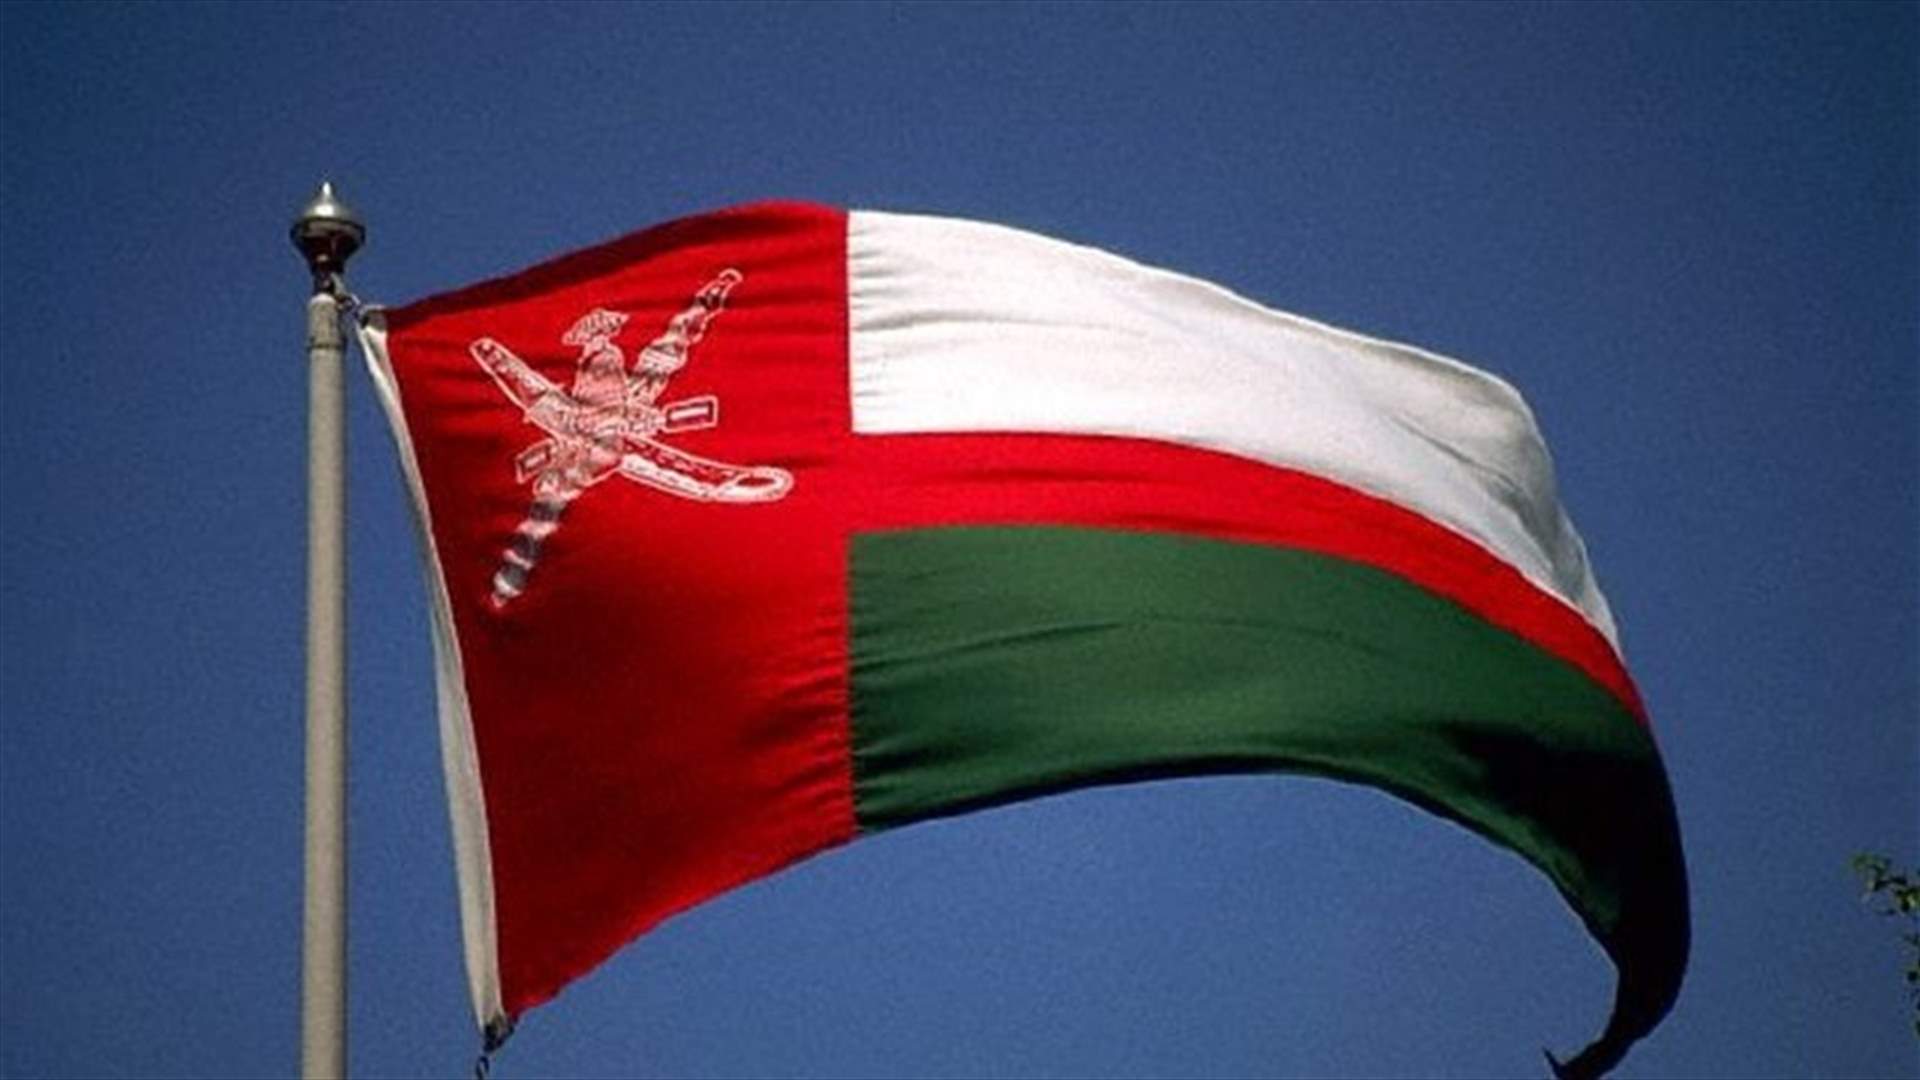 سلطنة عمان تعلن بدء تشغيل أول سوق فورية للكهرباء في الشرق الأوسط